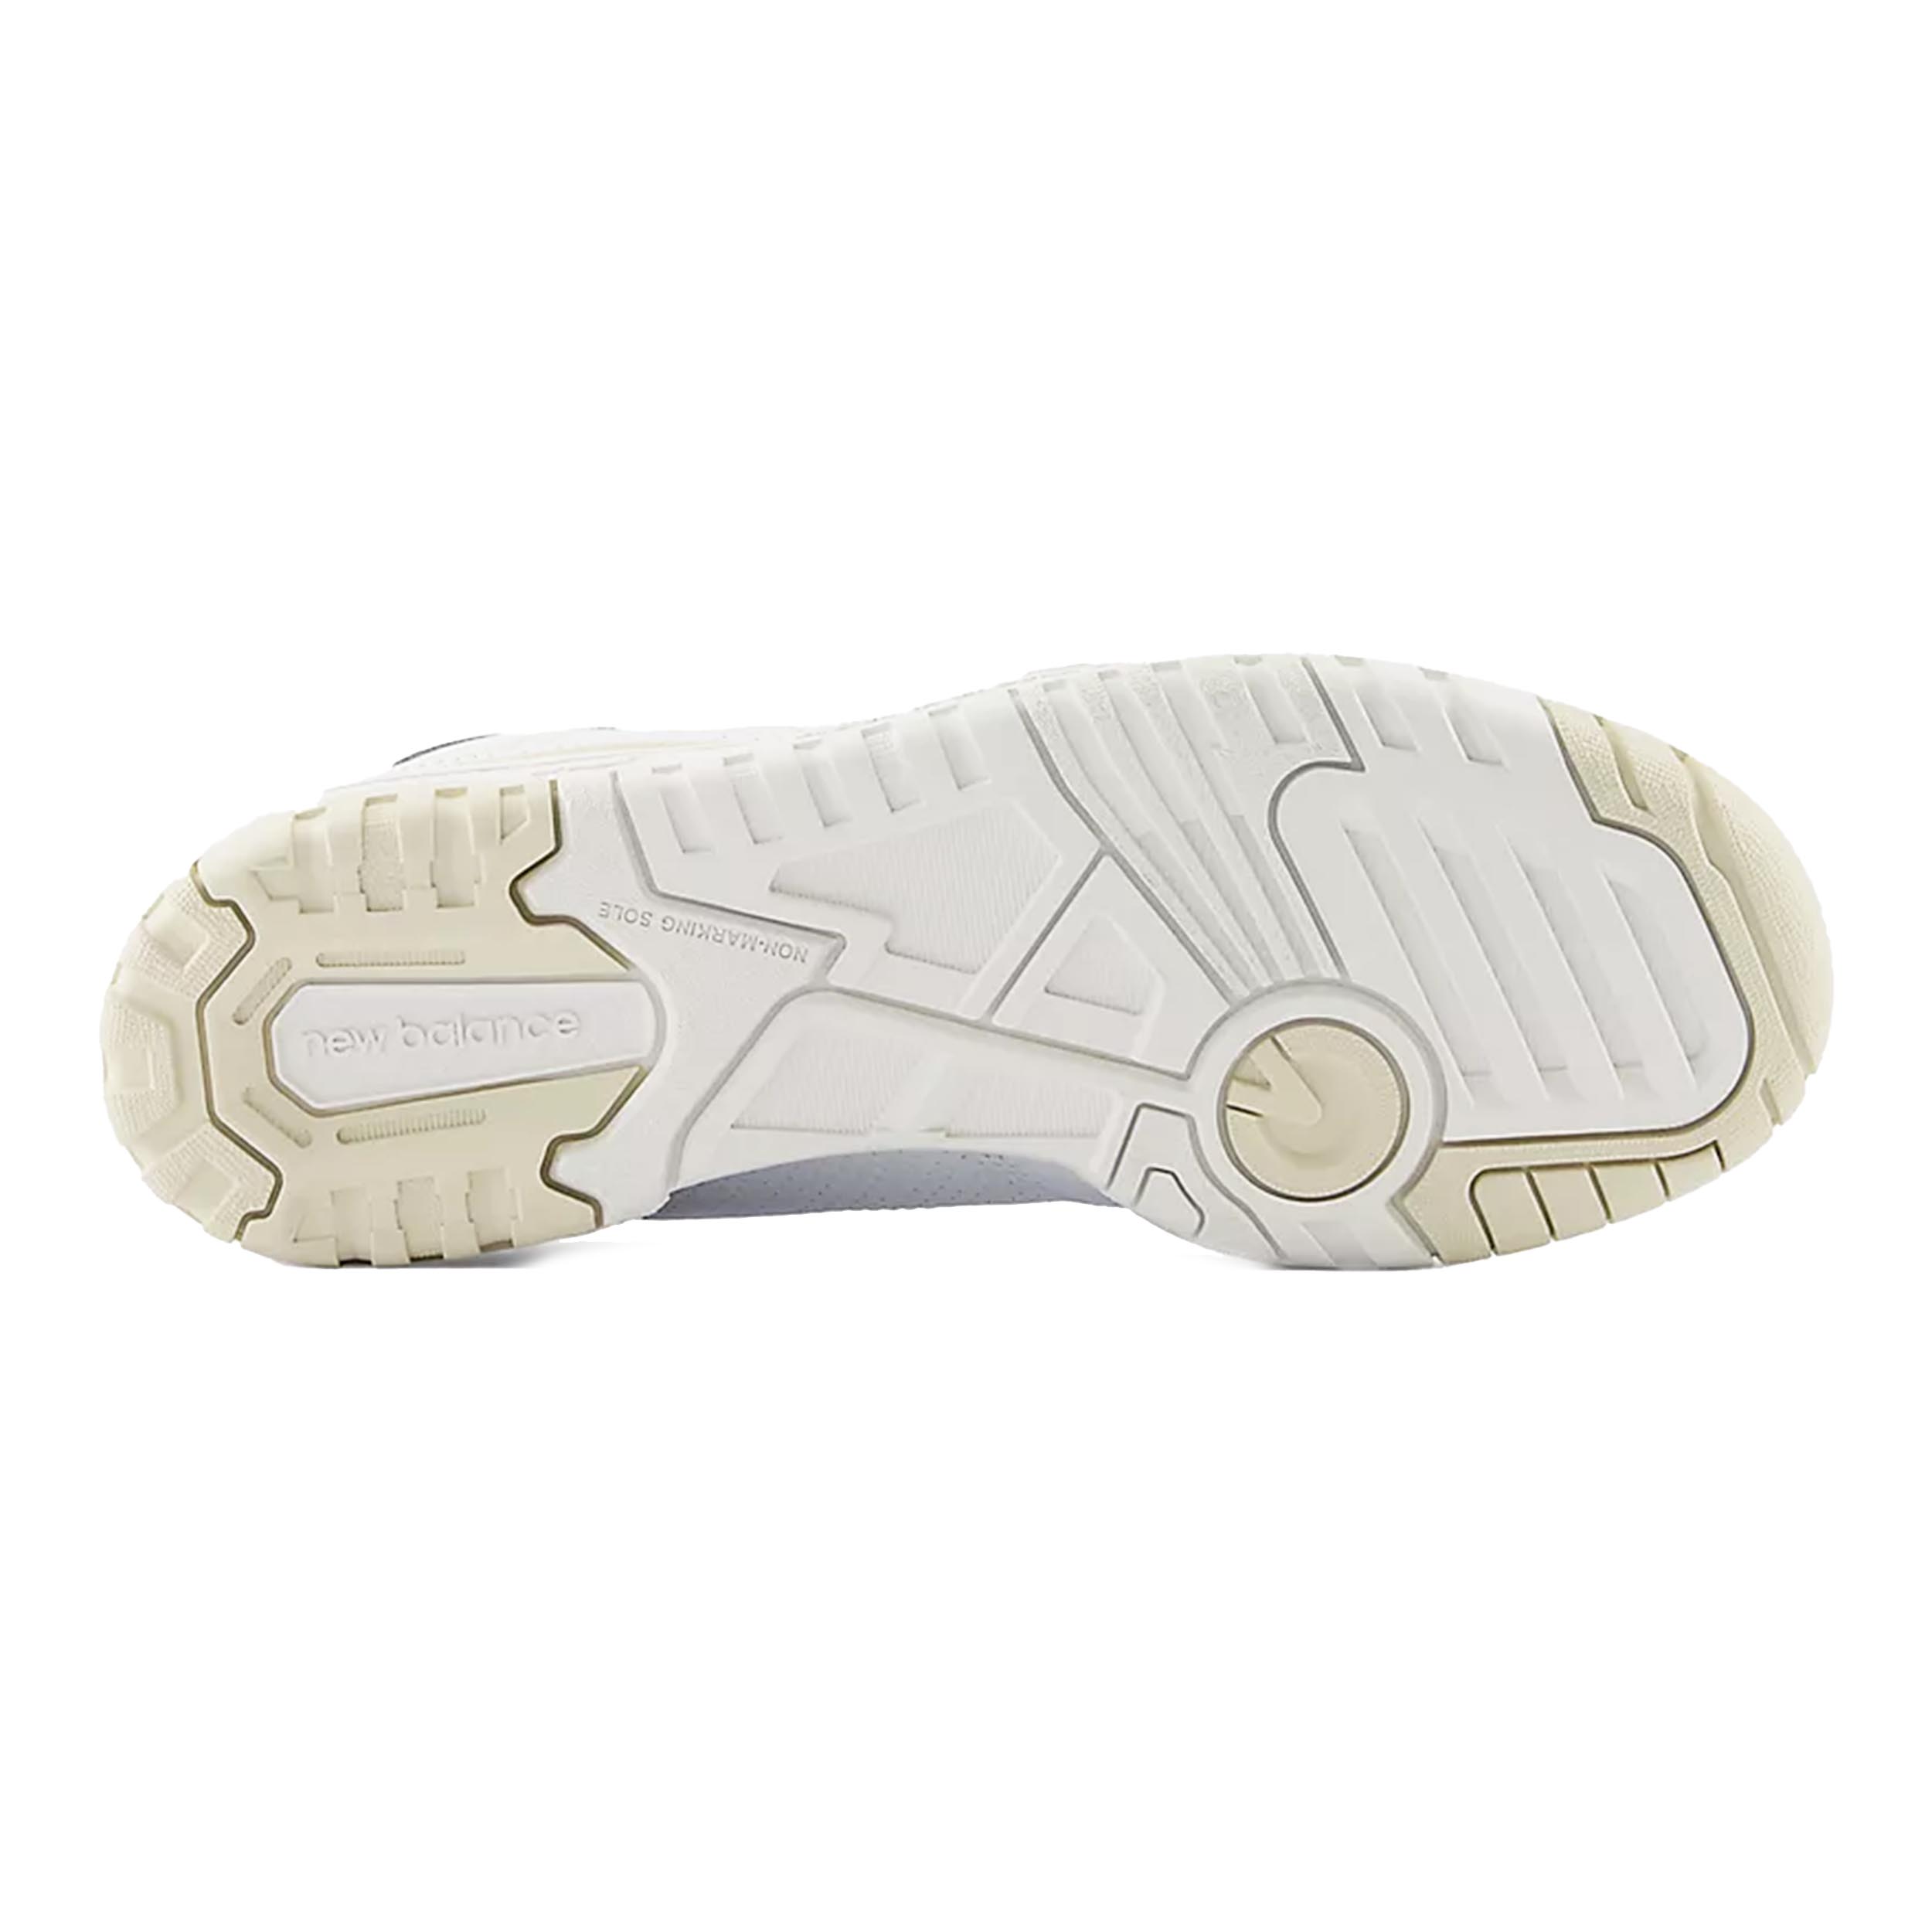 New Balance 550 Sneaker White/Linen